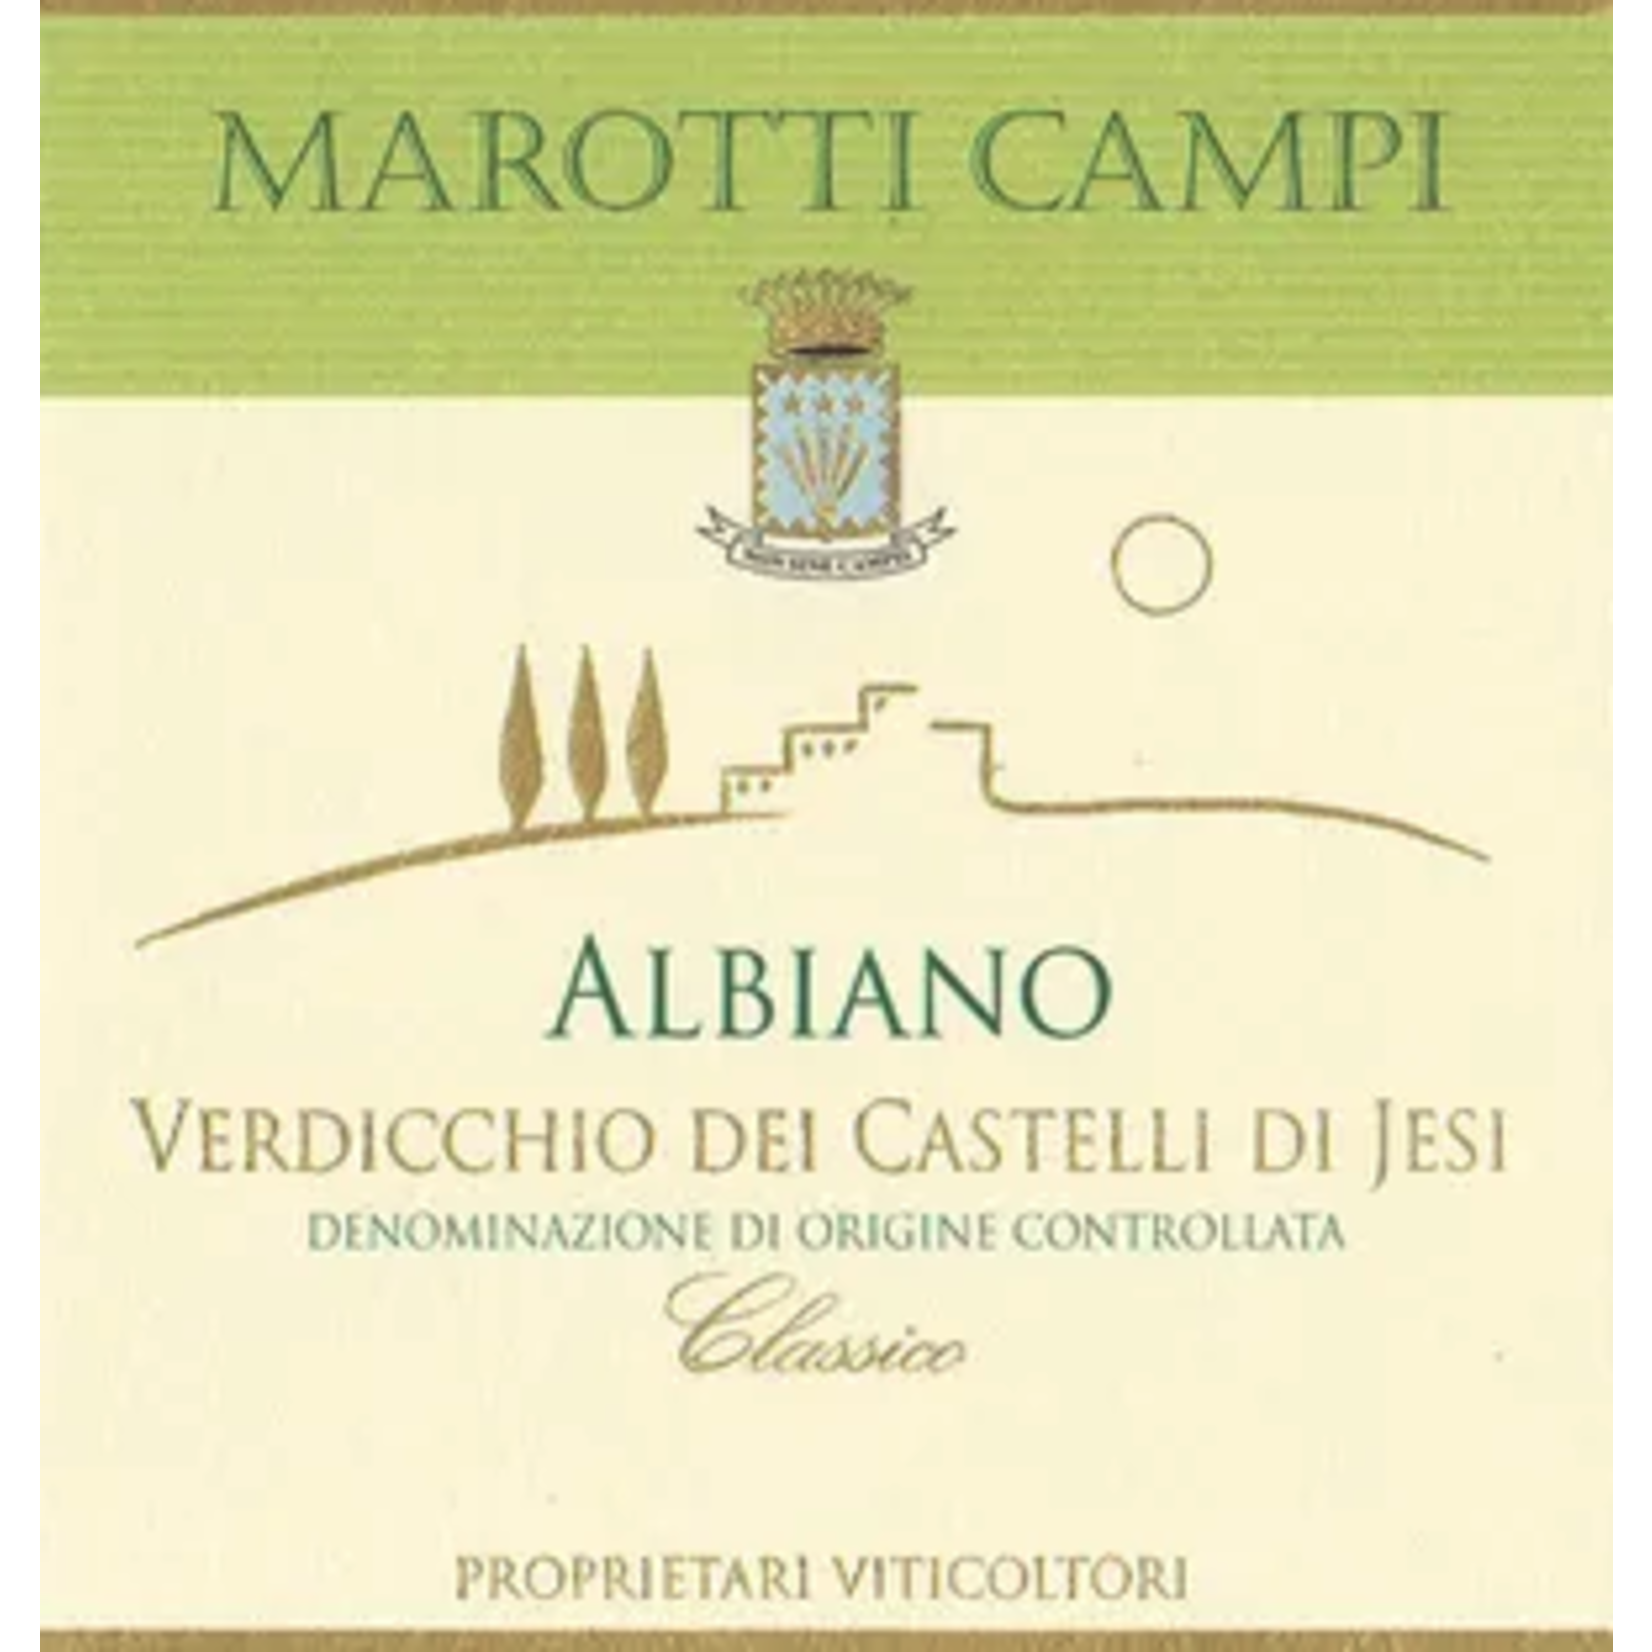 Wine Marotti Campi Albiano Verdicchio 2022